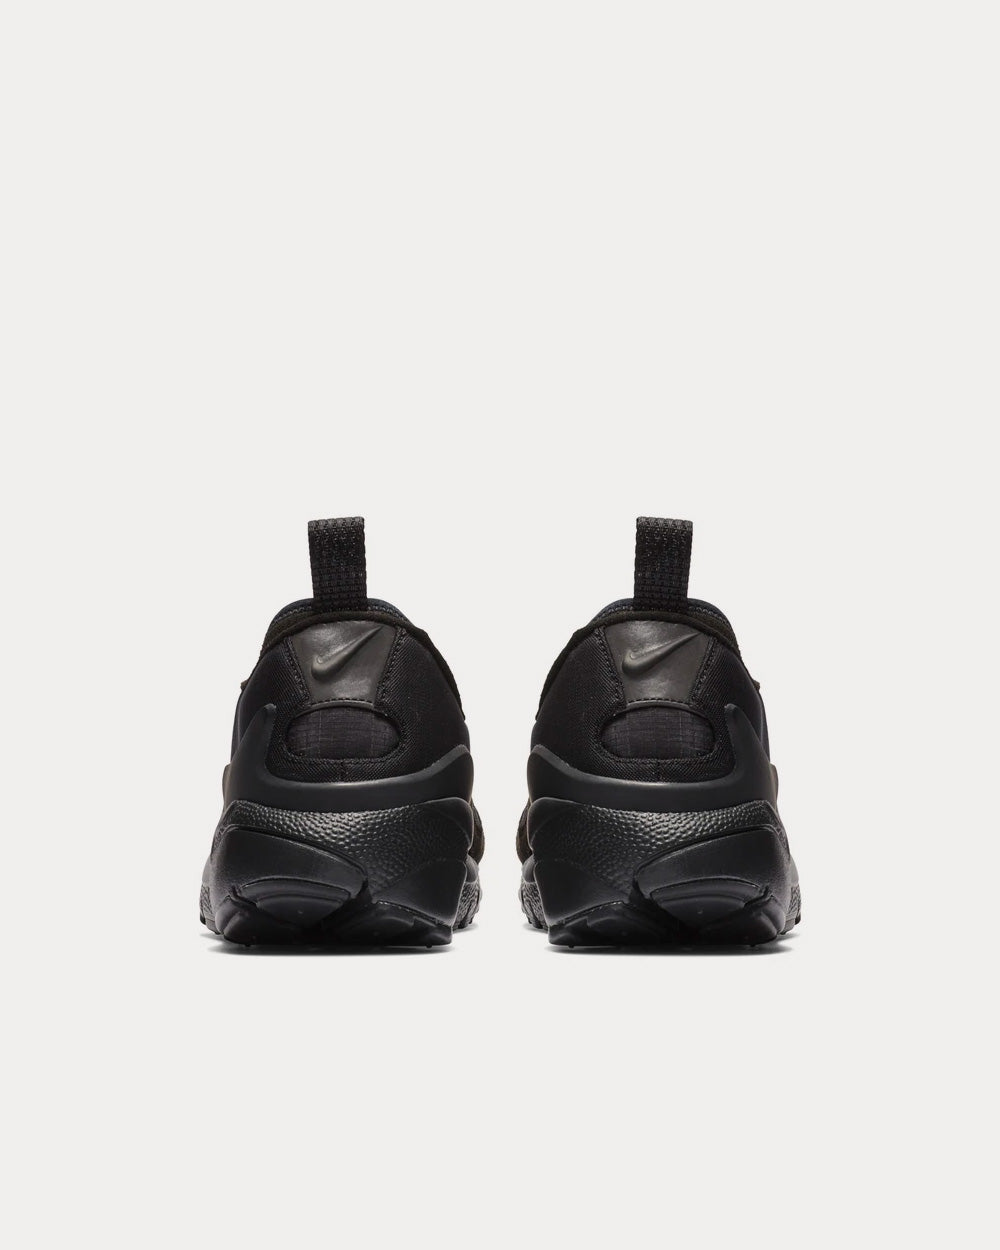 Nike x Comme des Garçons - Footscape Black Low Top Sneakers